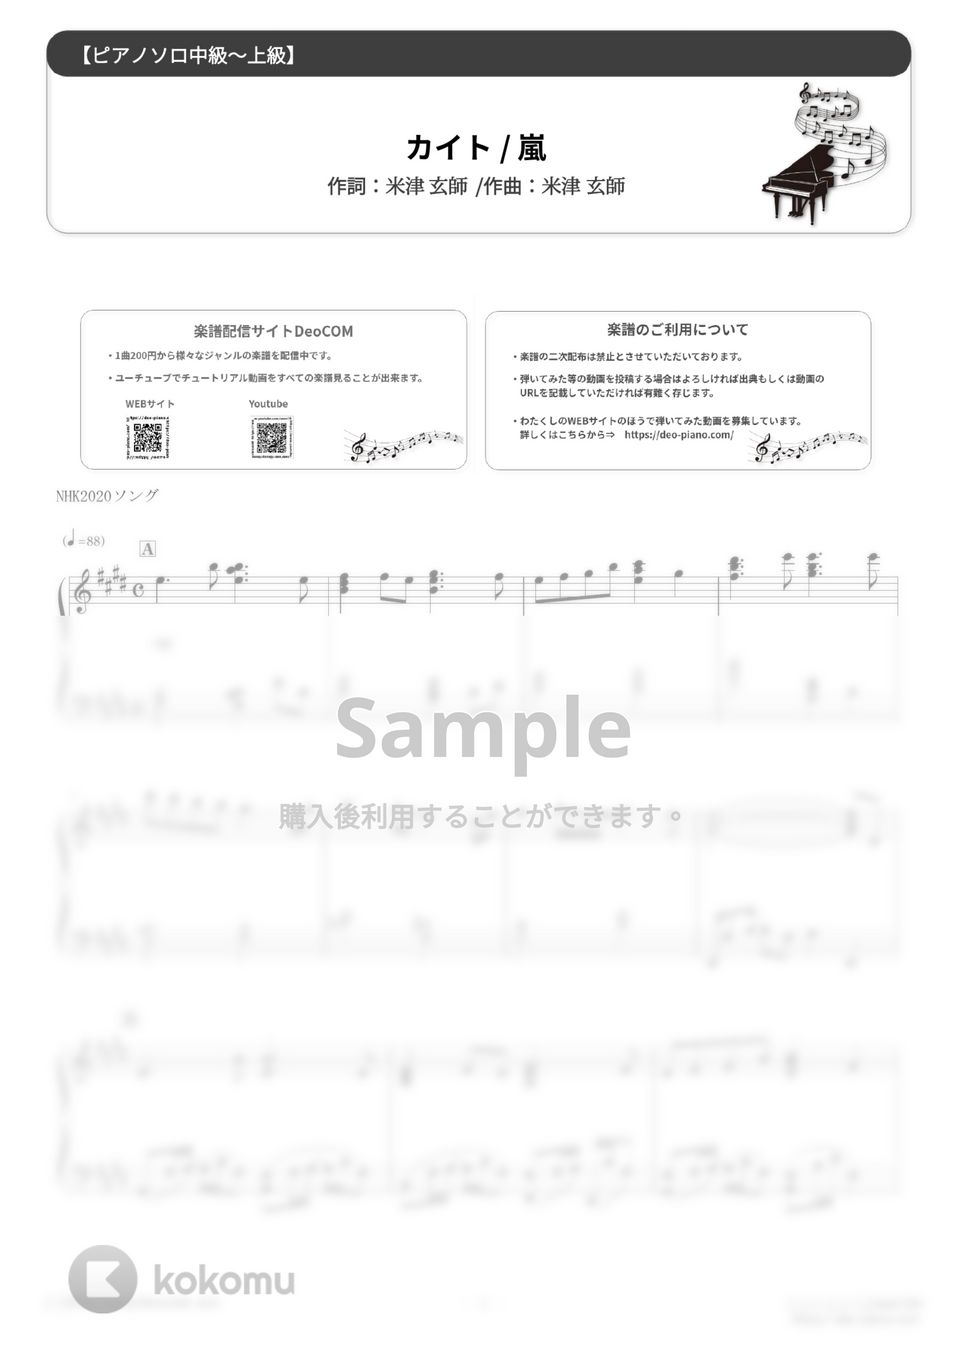 嵐 - カイト（ソロ中級～上級） (NHK2020ソング) by Dさん